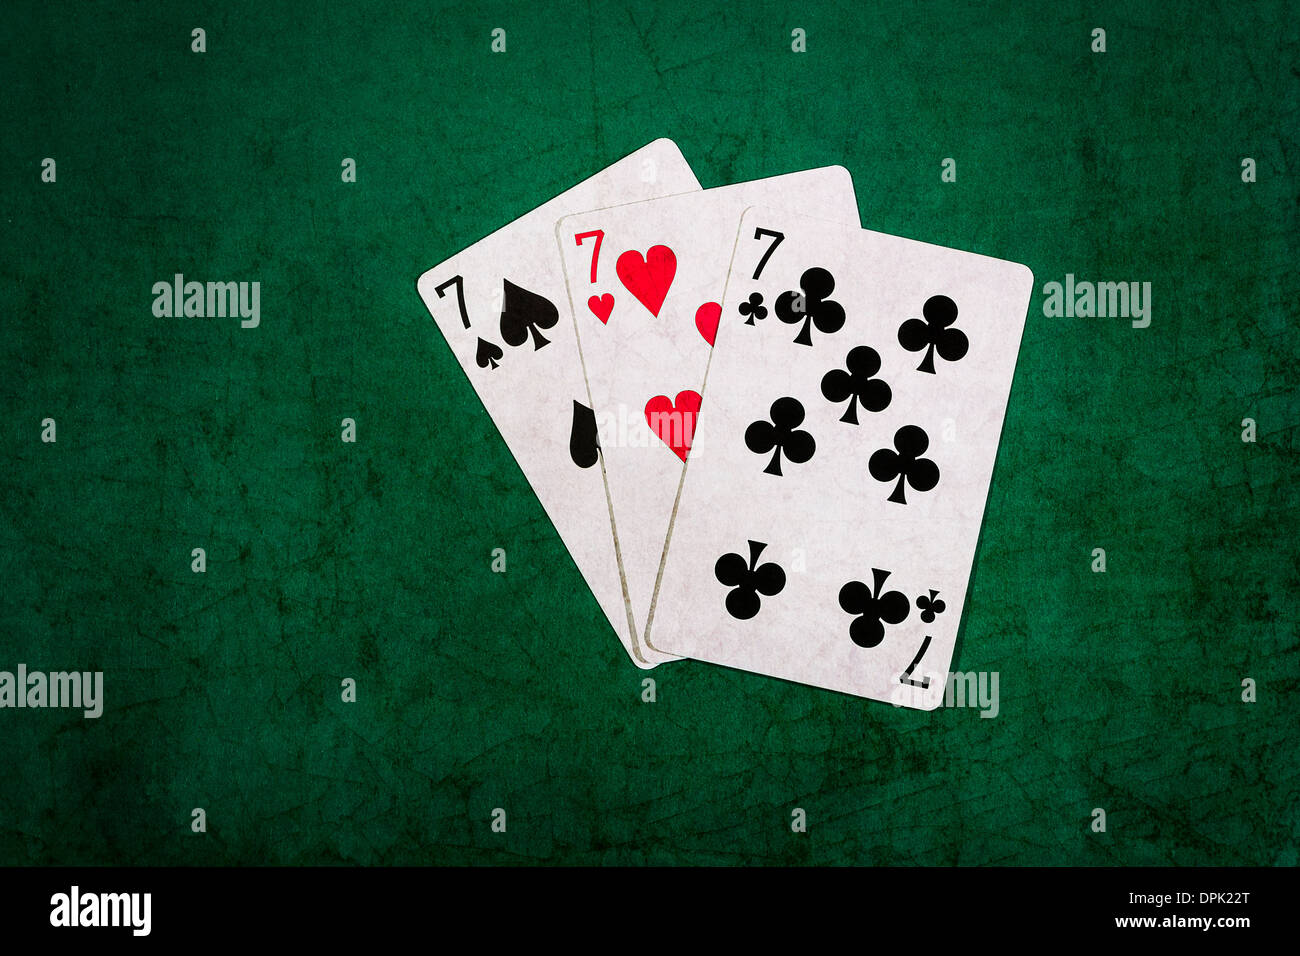 Twenty One 12. Vista ingrandita delle carte da gioco formando il blackjack combinazione di ventuno punti Foto Stock